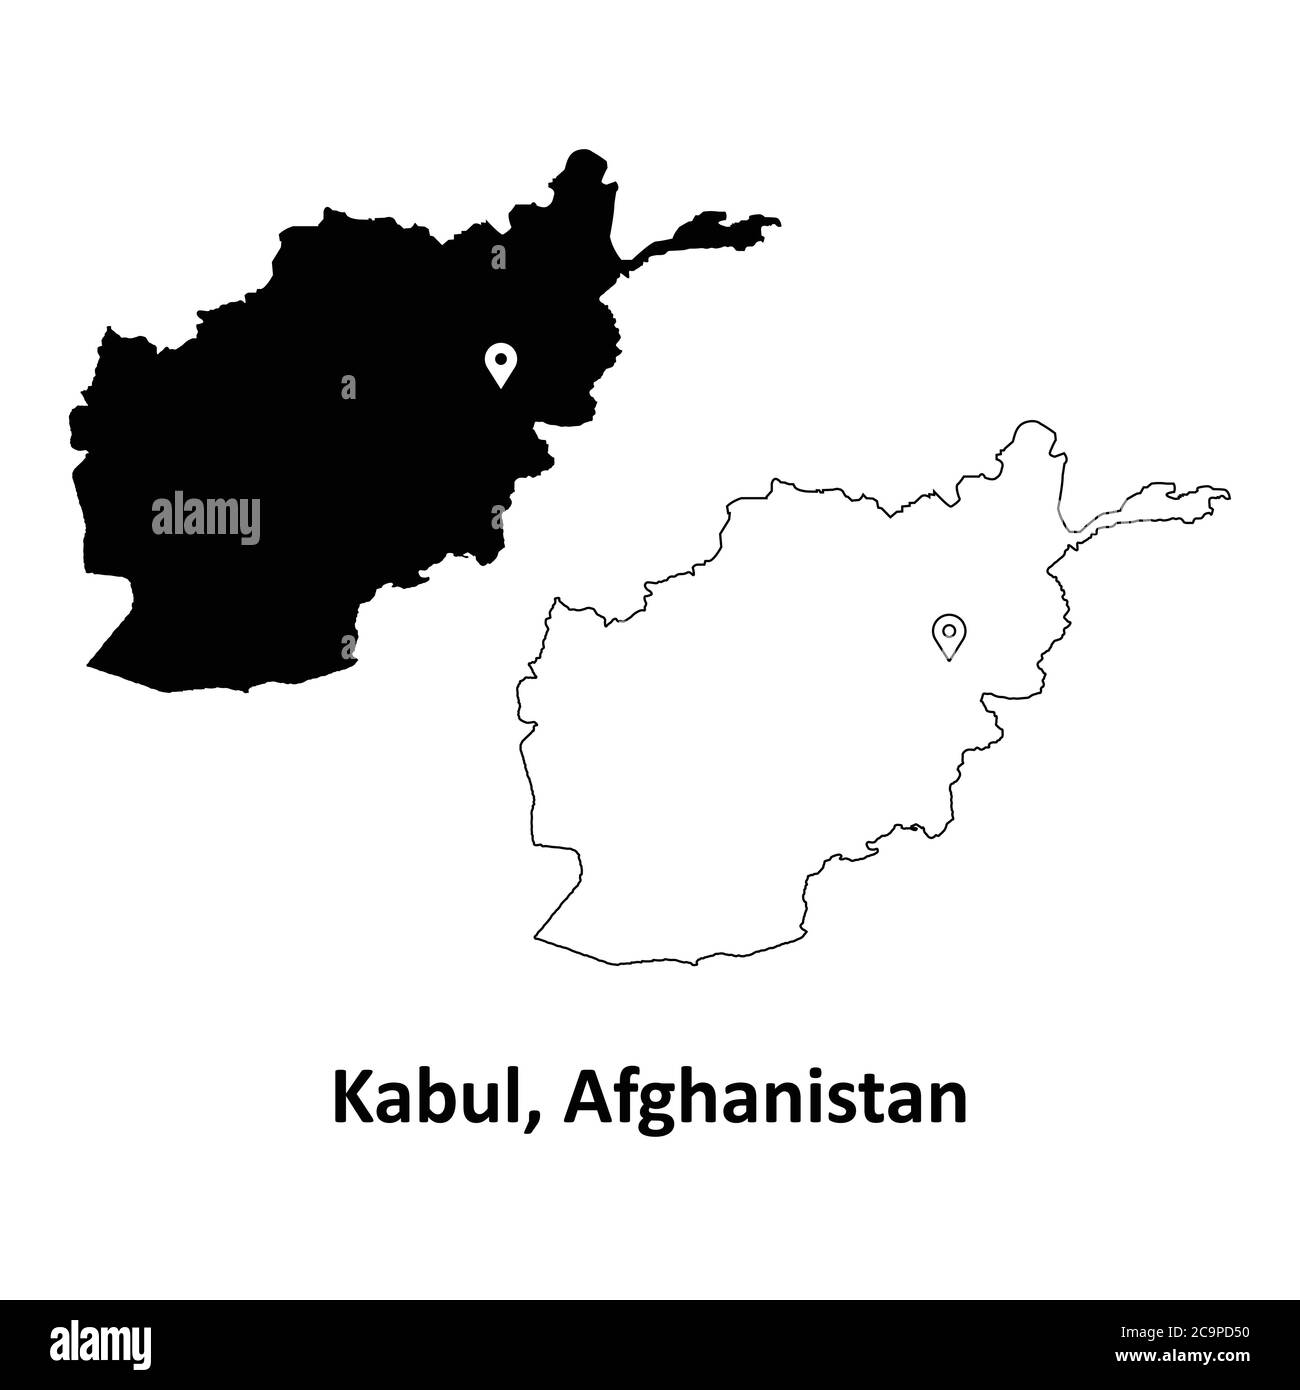 Kabul Afghanistan. Mappa dettagliata del Paese con il pin della posizione della città capitale. Silhouette nera e mappe di contorno isolate su sfondo bianco. Vettore EPS Illustrazione Vettoriale